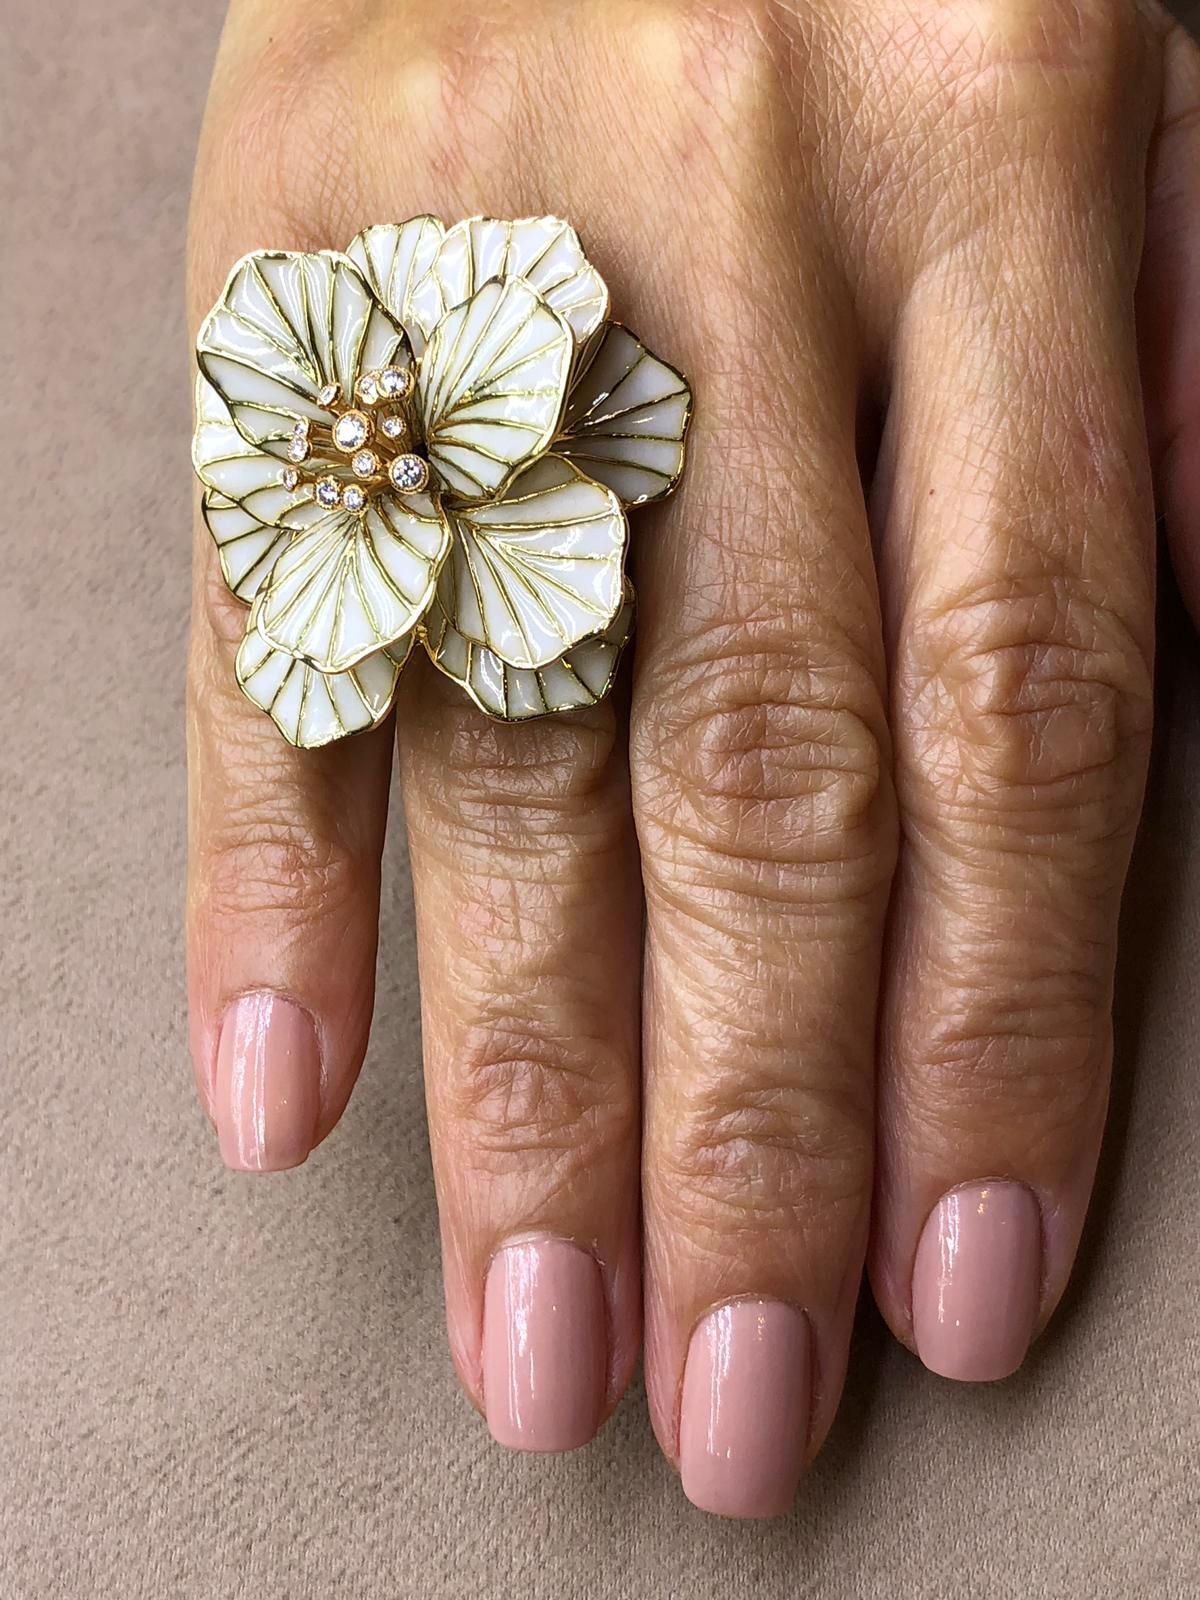 18k Rose Gold Diamond and Enamel Flower Ring
Size :14